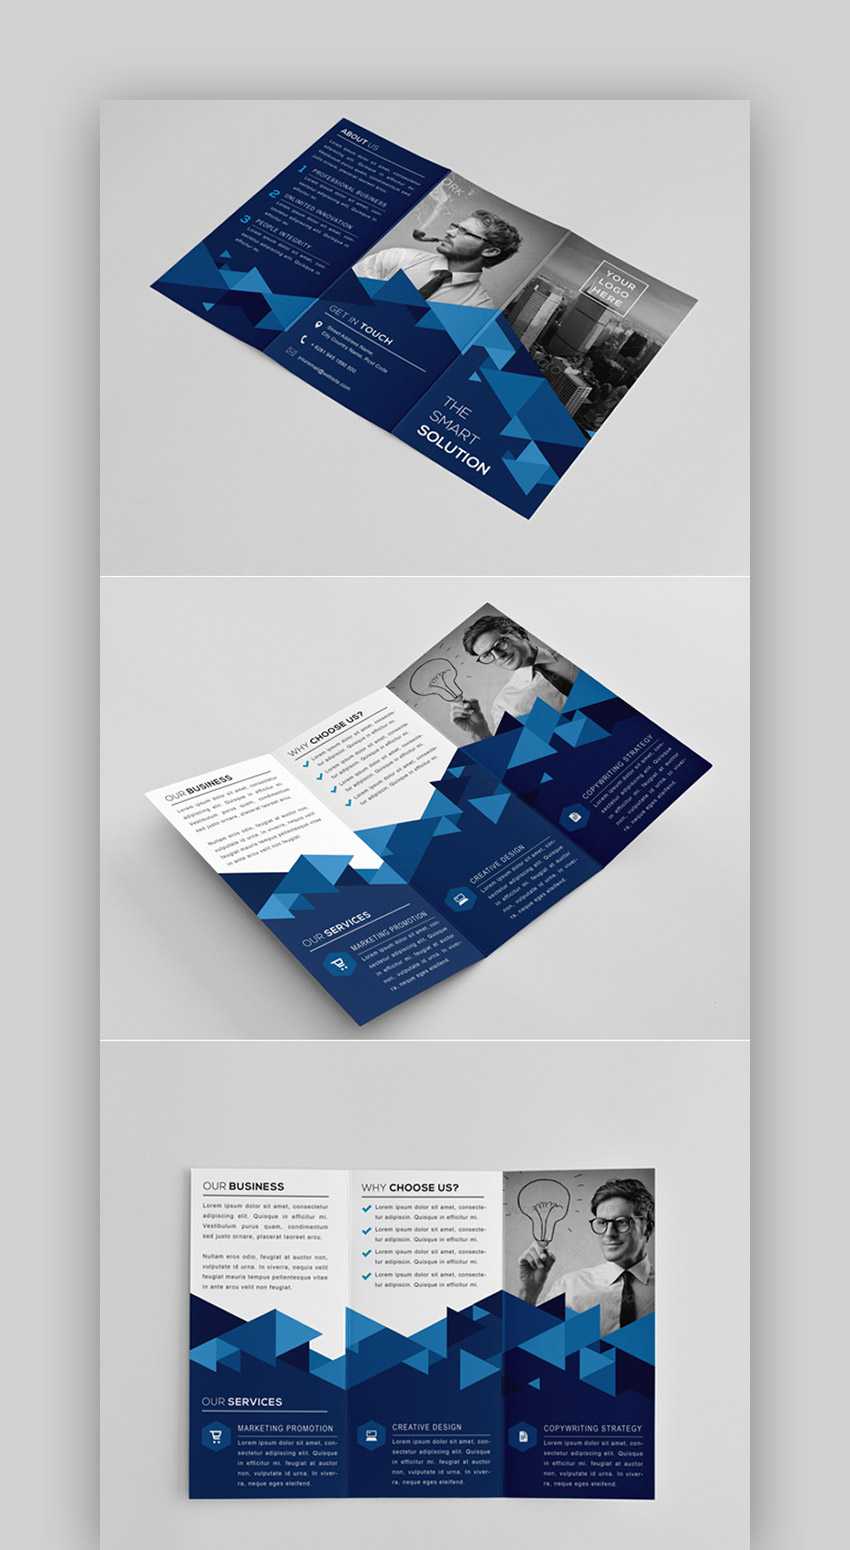 30 Best Indesign Brochure Templates – Creative Business With Regard To Brochure Template Indesign Free Download